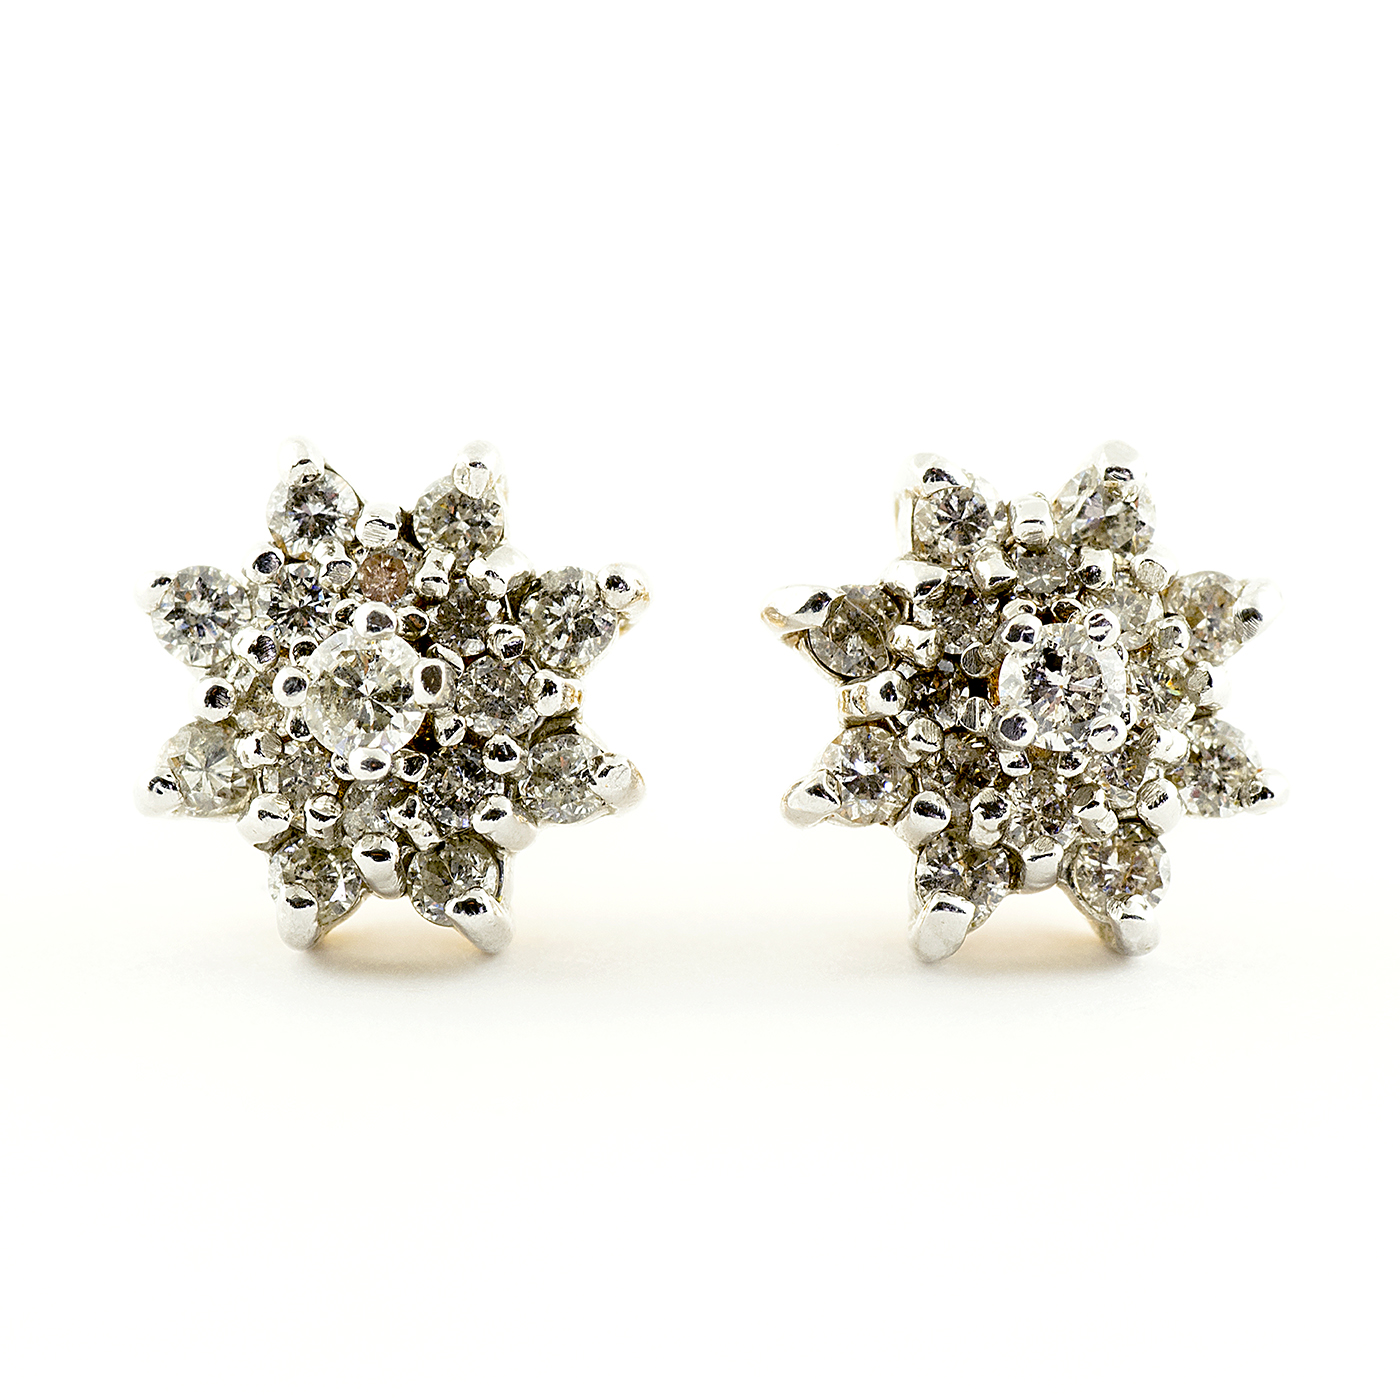 Ensemble de boucles d'oreilles en or blanc 18 carats, avec 17 diamants naturels, taille brillant 1,5 ct.